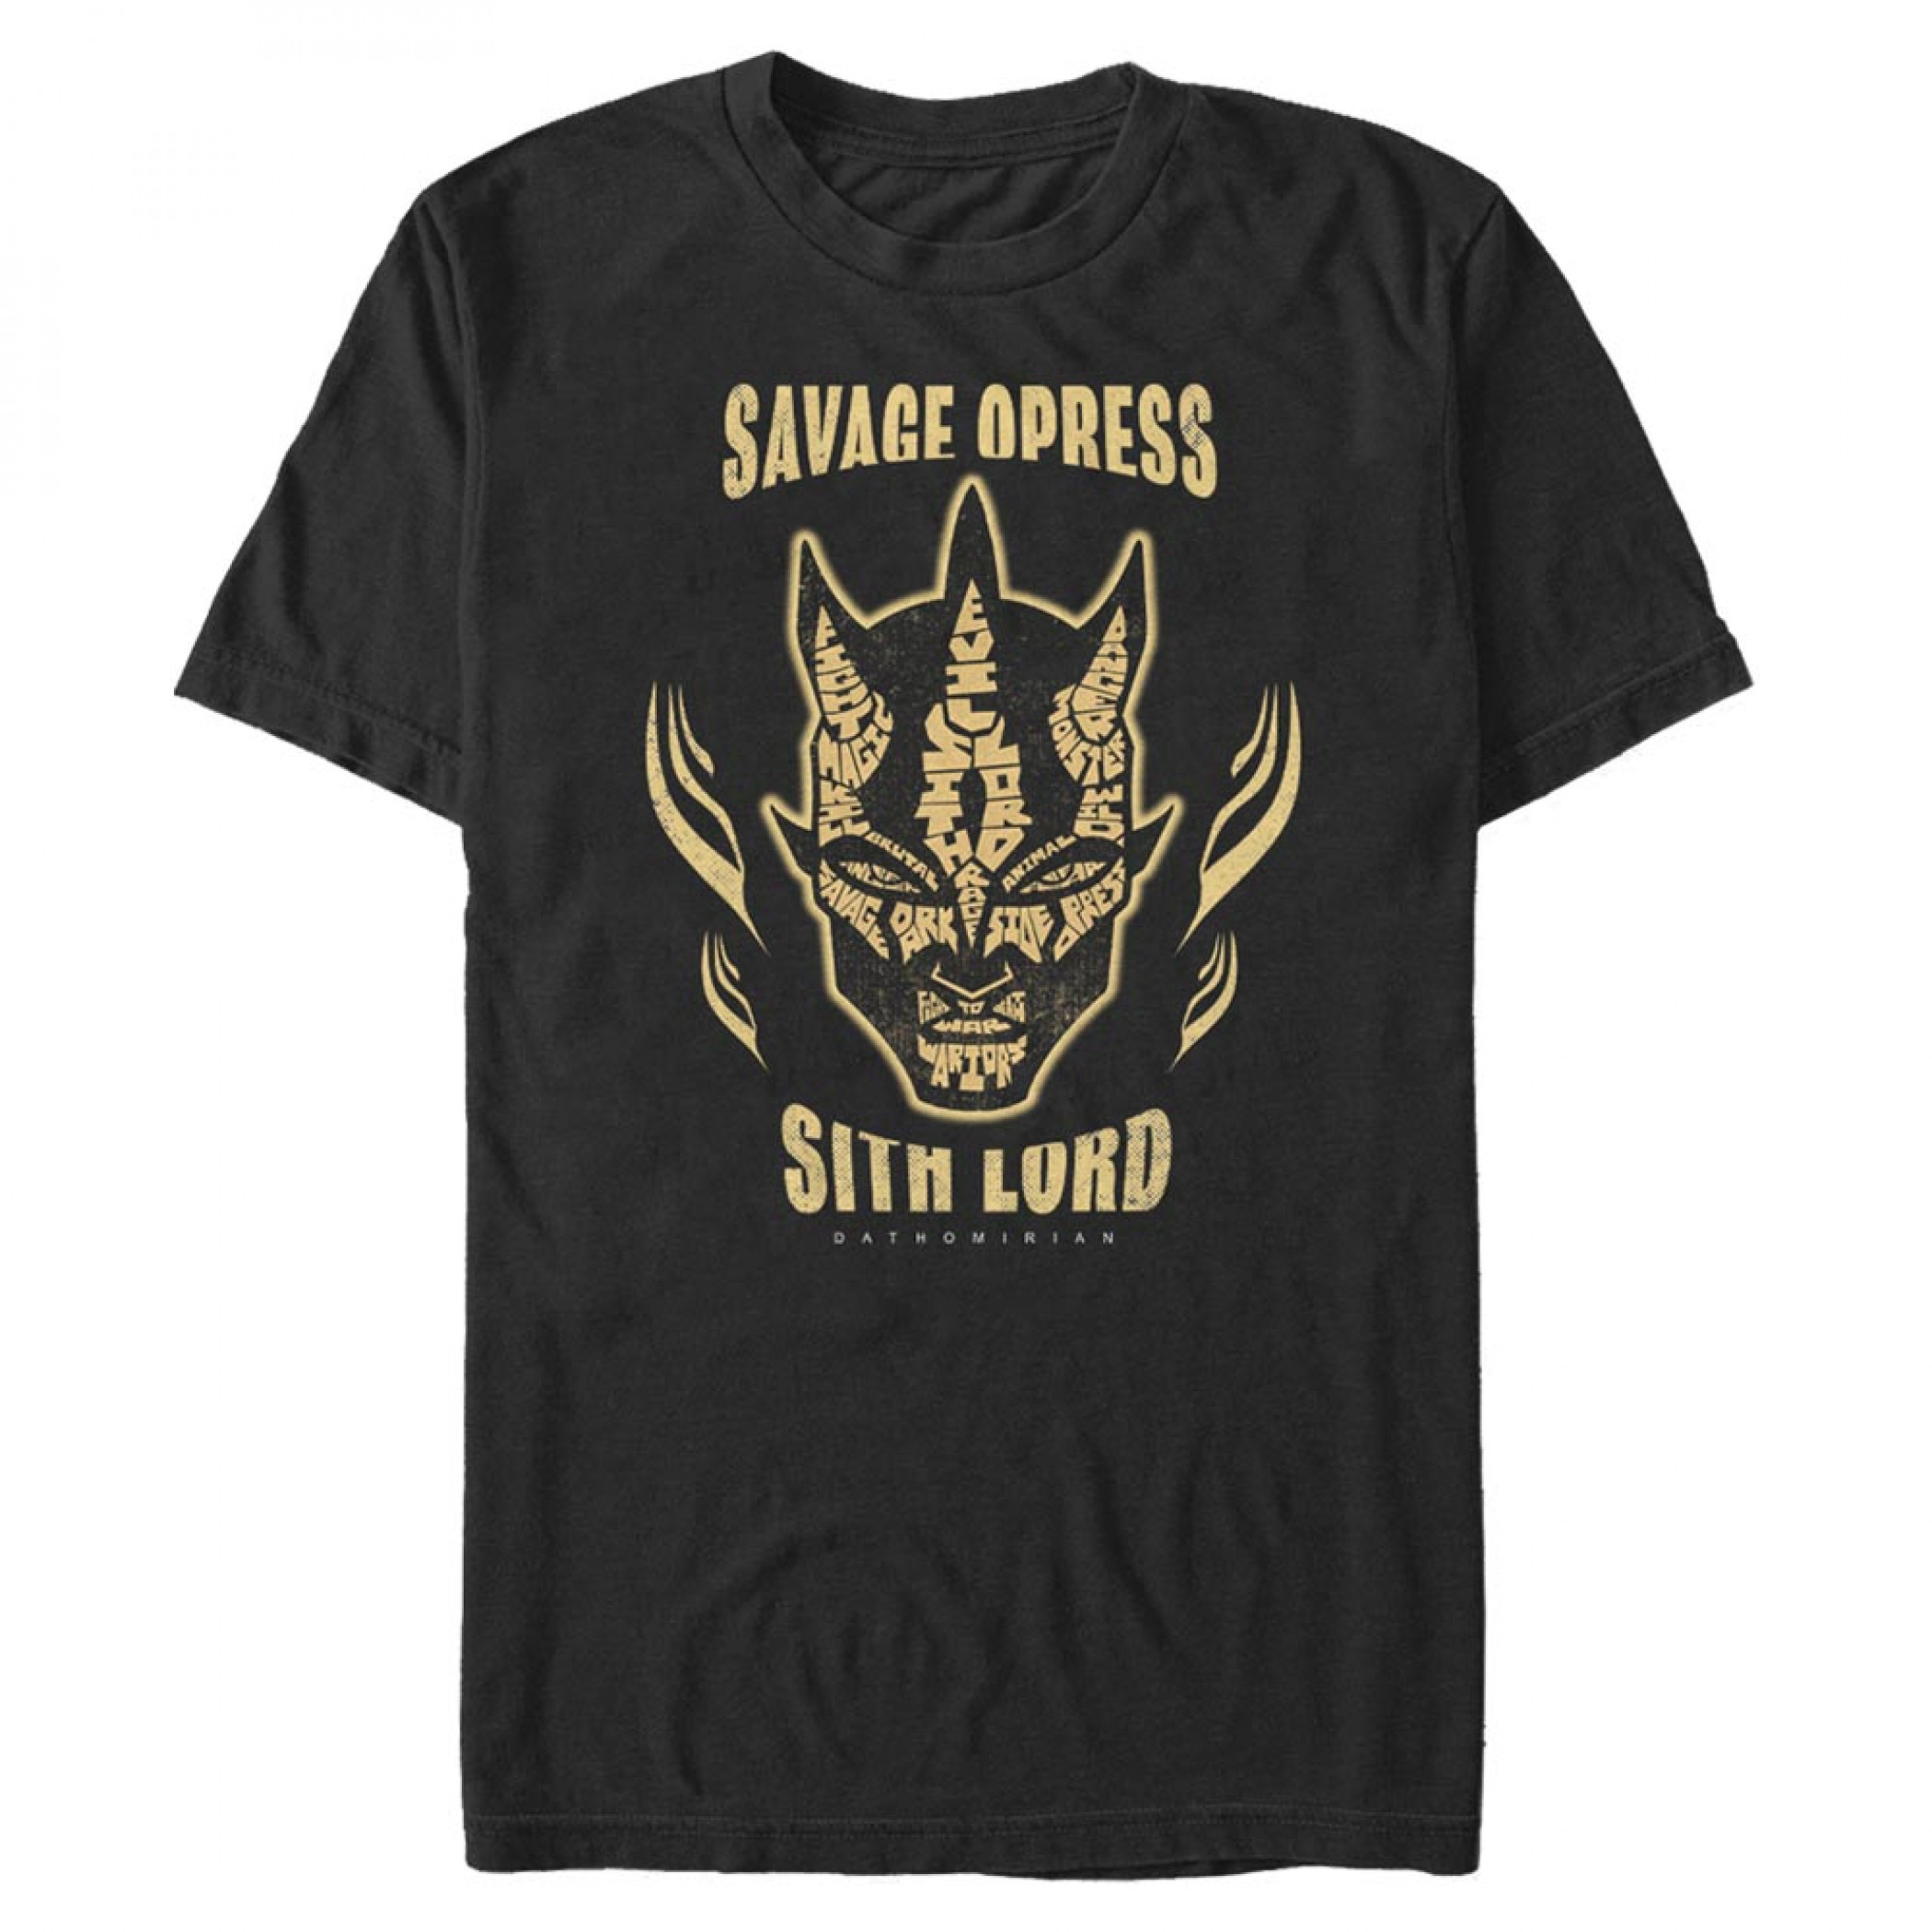 Star Wars Clone Wars Savage Opress Sith Lord T-Shirt